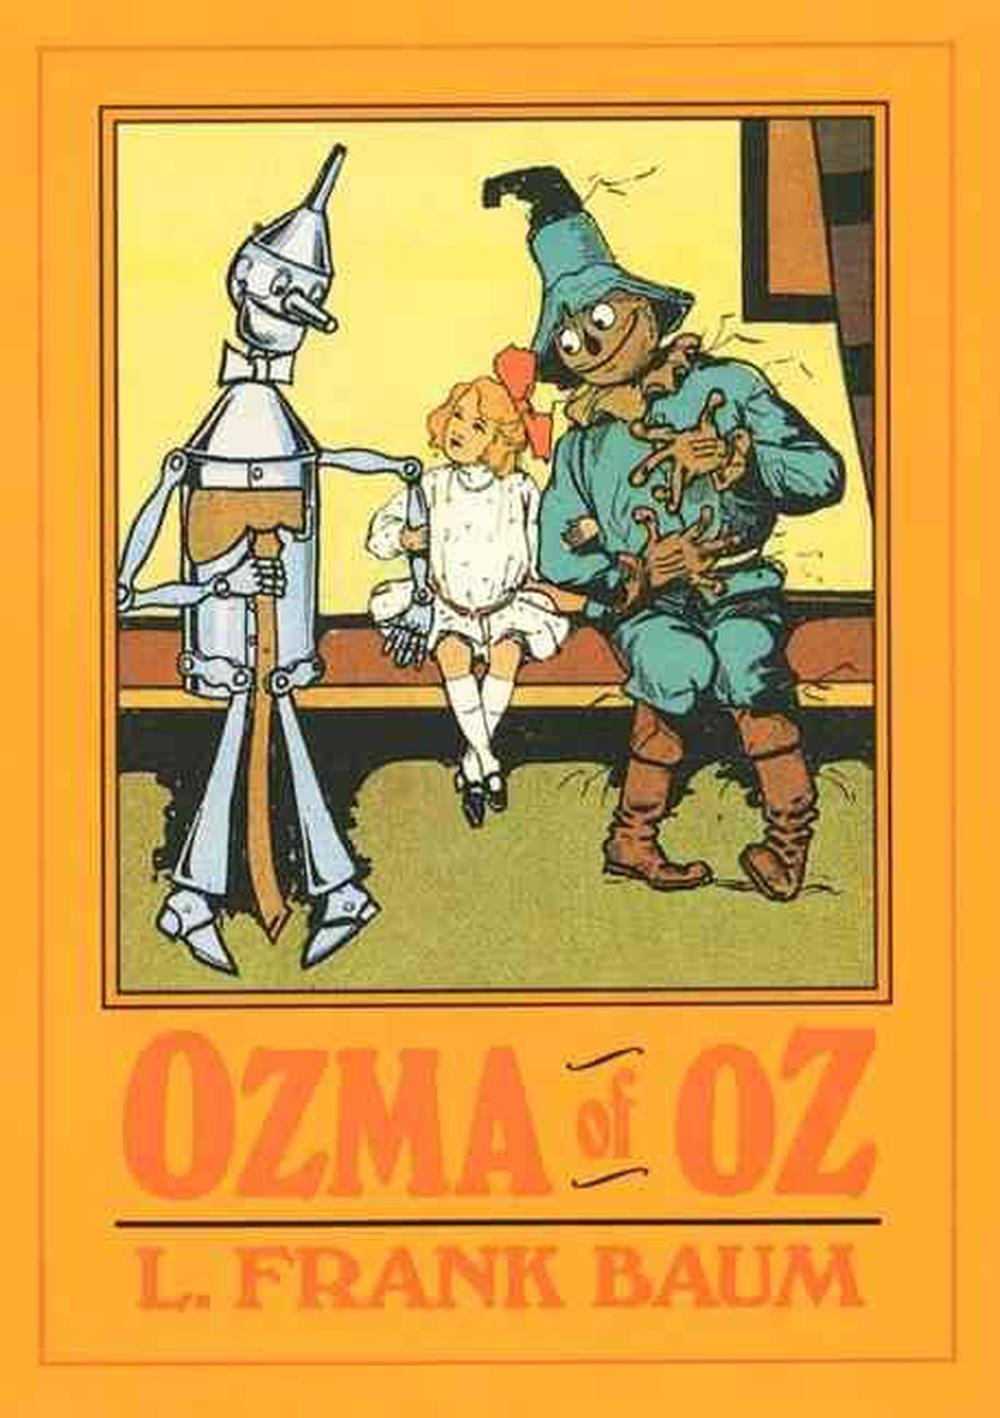 ozma of oz book